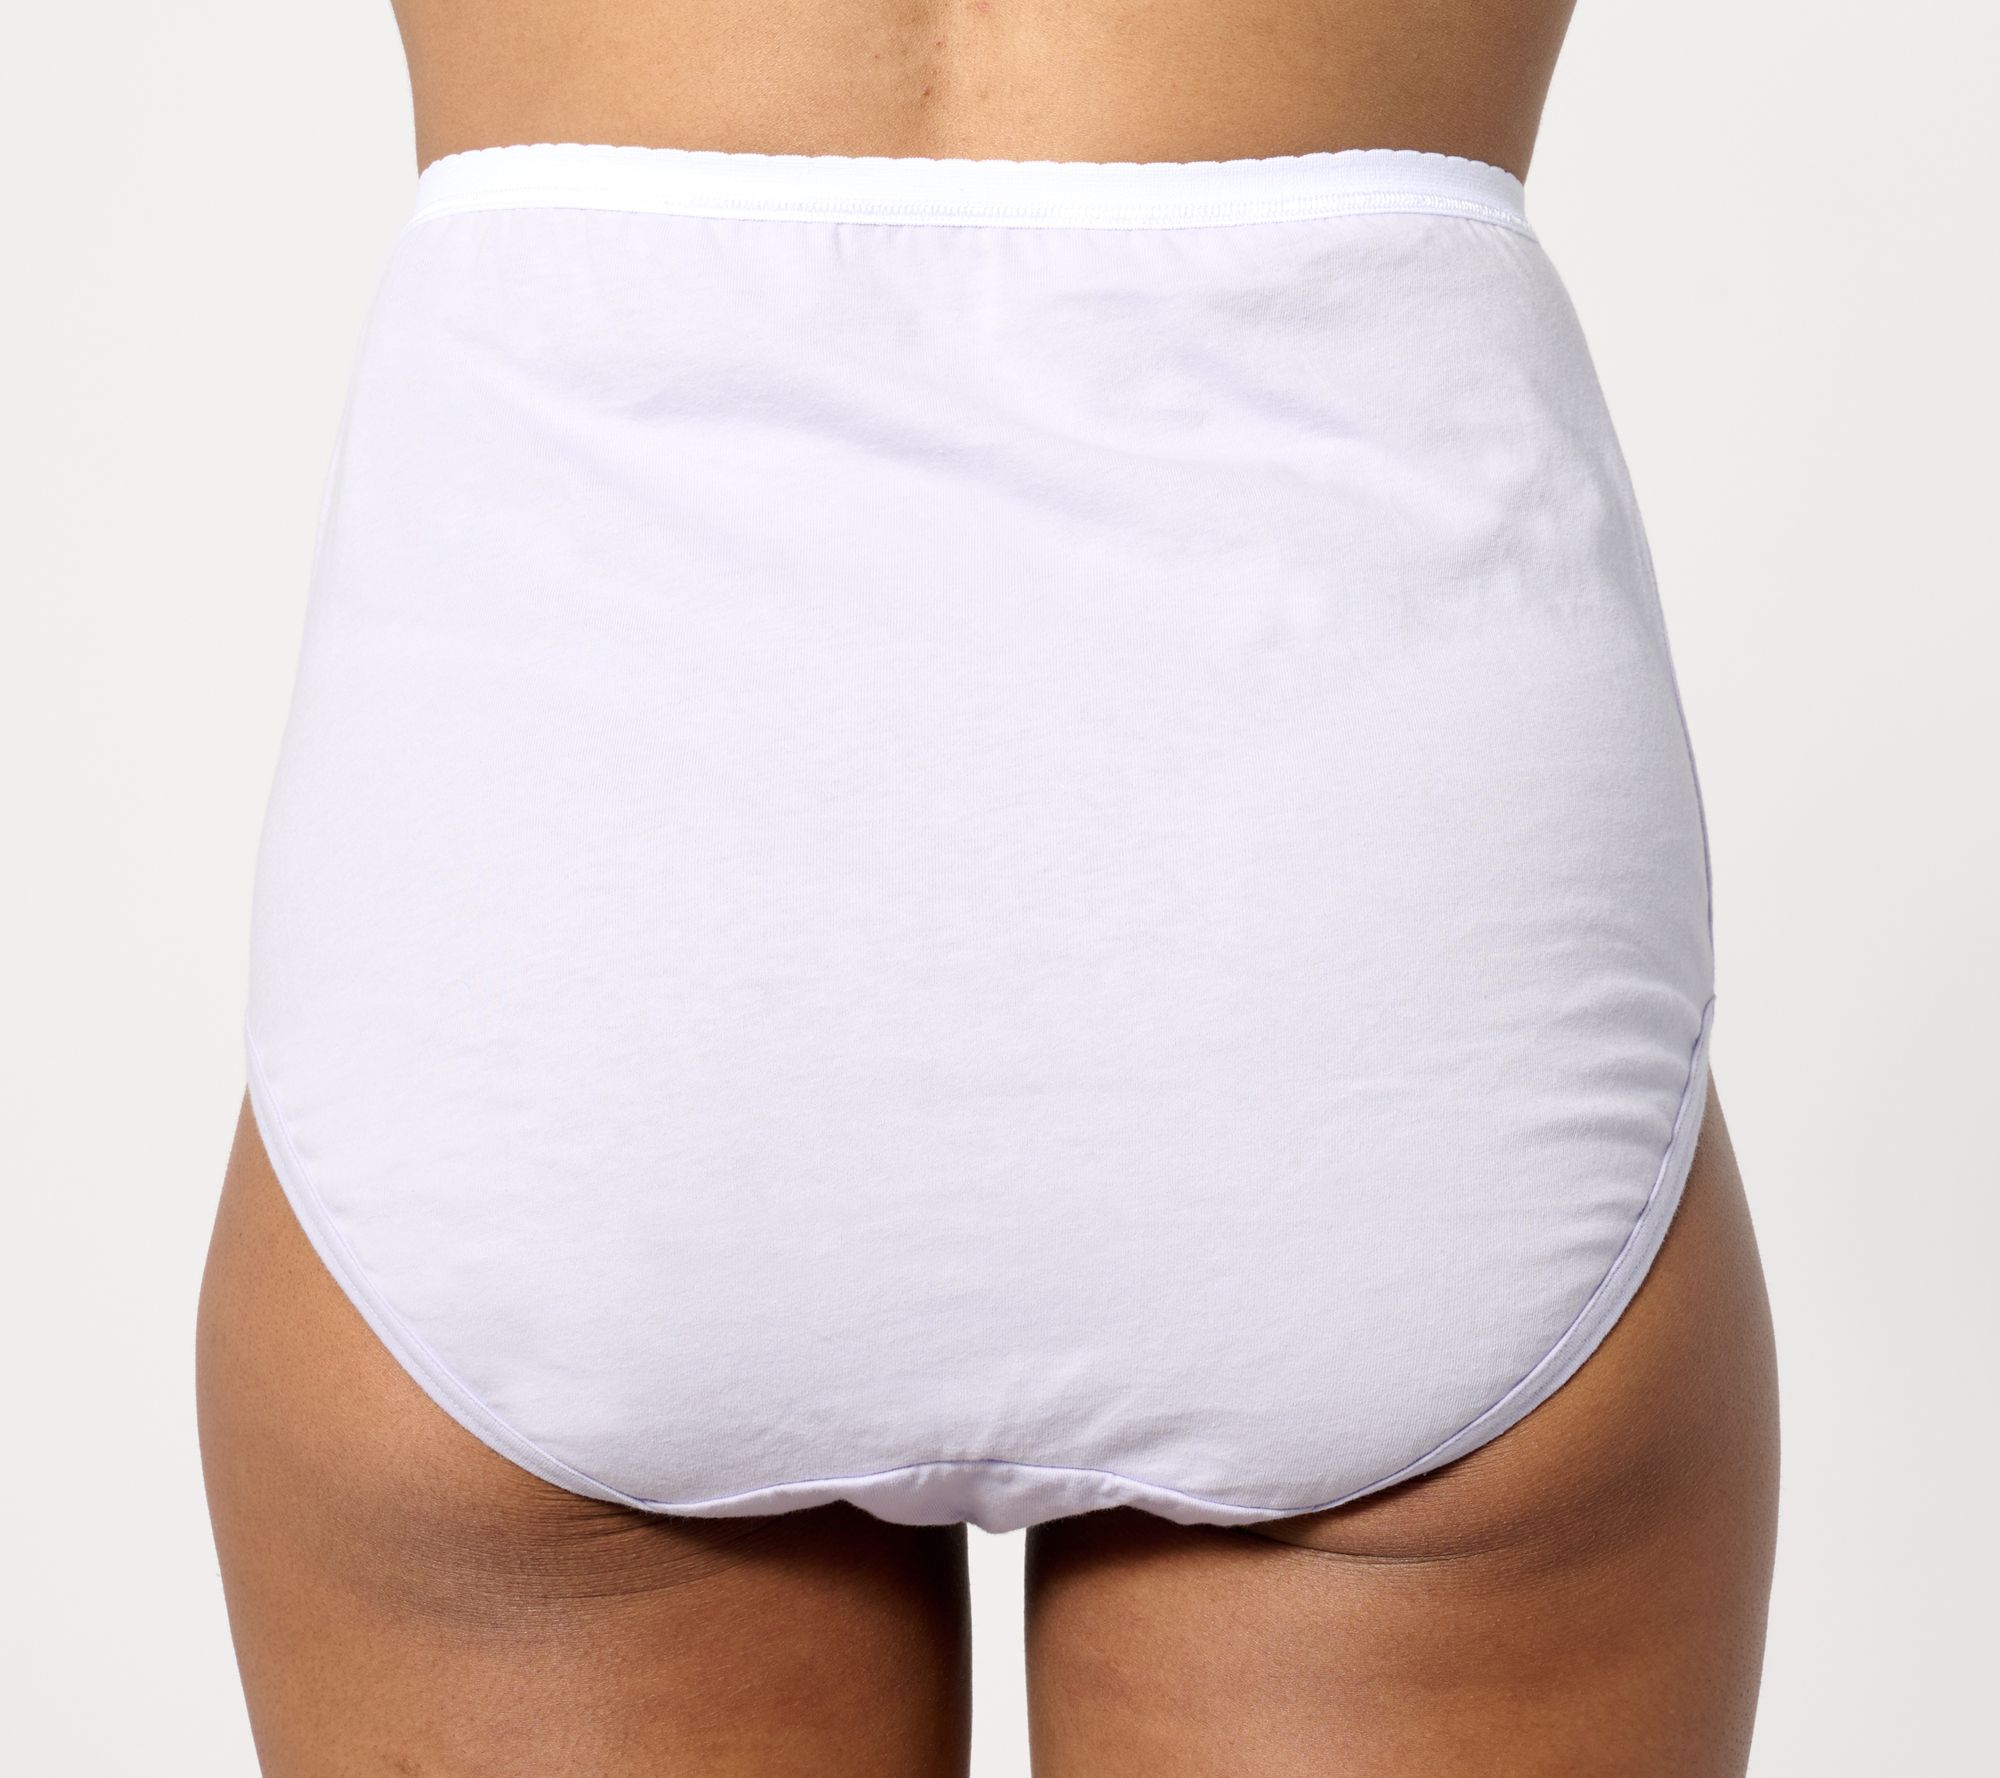 Central Perk Knickers 2 Pack Panties FRIENDS Underwear Women